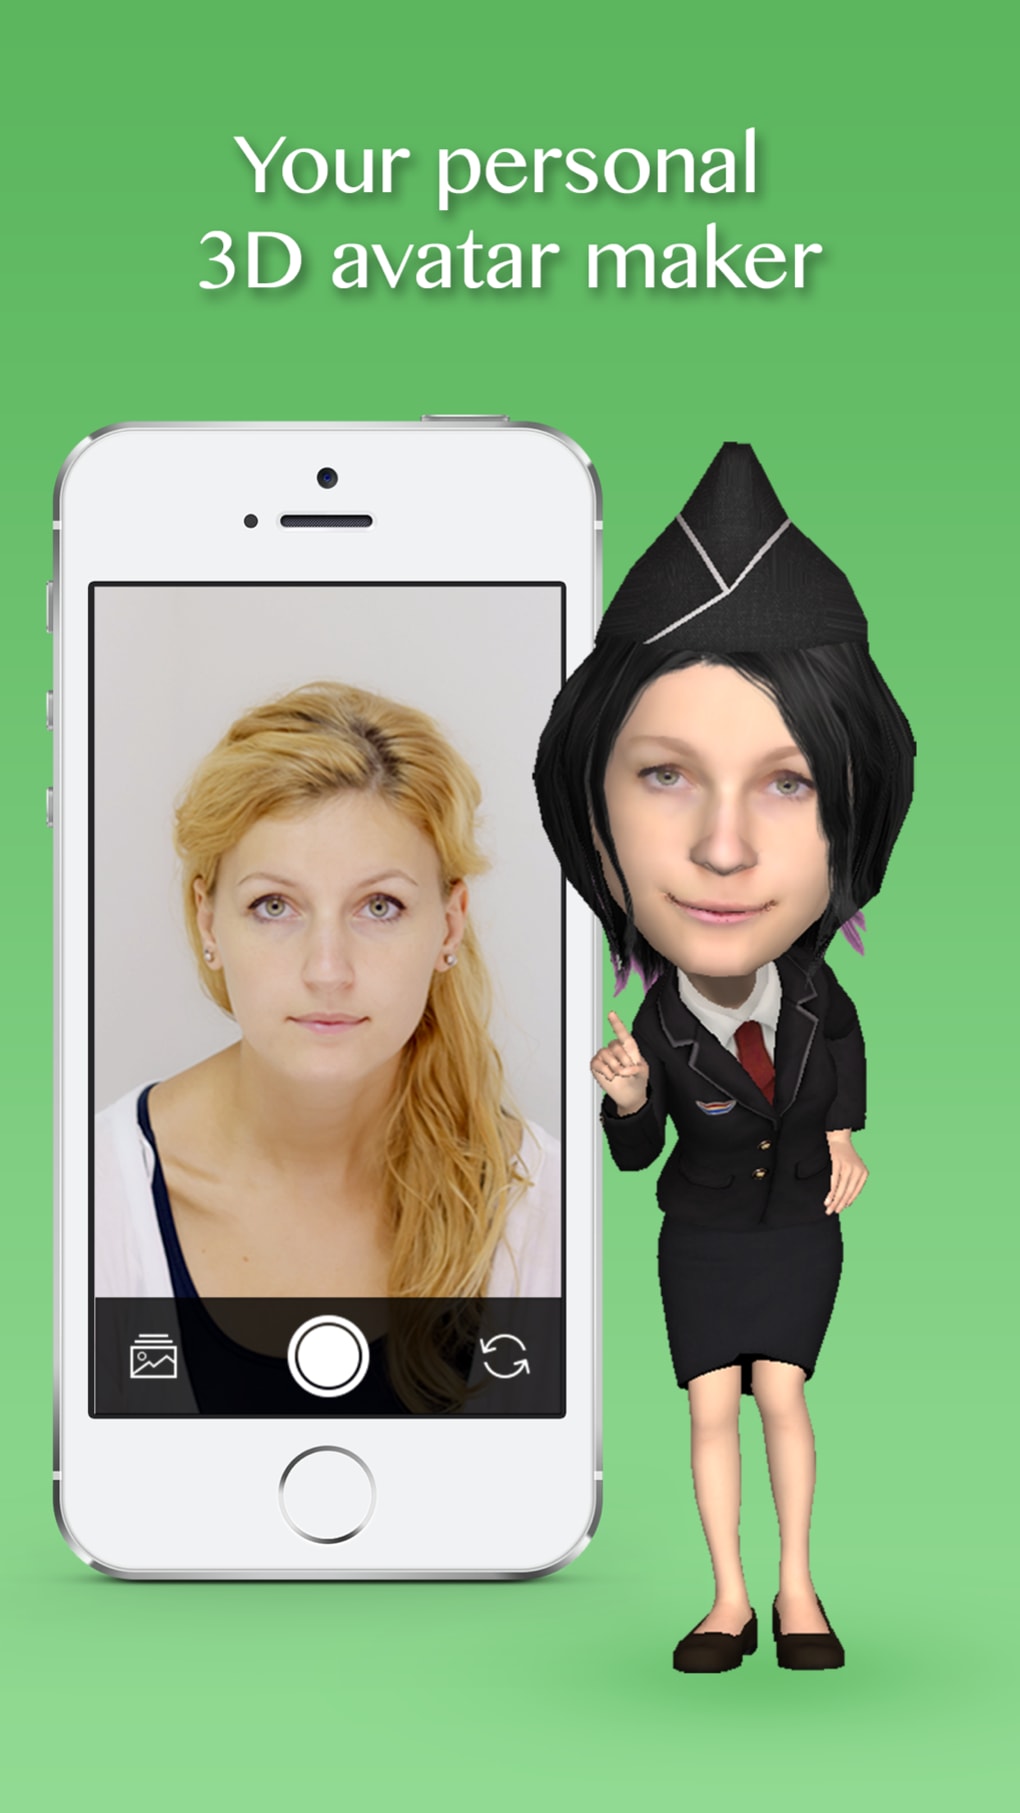 Bạn muốn tạo ra một avatar 3D đẹp mắt và sinh động trên Instagram? Hãy thử ngay công cụ tạo avatar Insta3D. Với nhiều tính năng tùy chỉnh hấp dẫn, bạn có thể thiết kế avatar của mình để phù hợp với phong cách cá nhân. Với Insta3D, bạn có thể thu hút mọi sự chú ý trên Instagram!